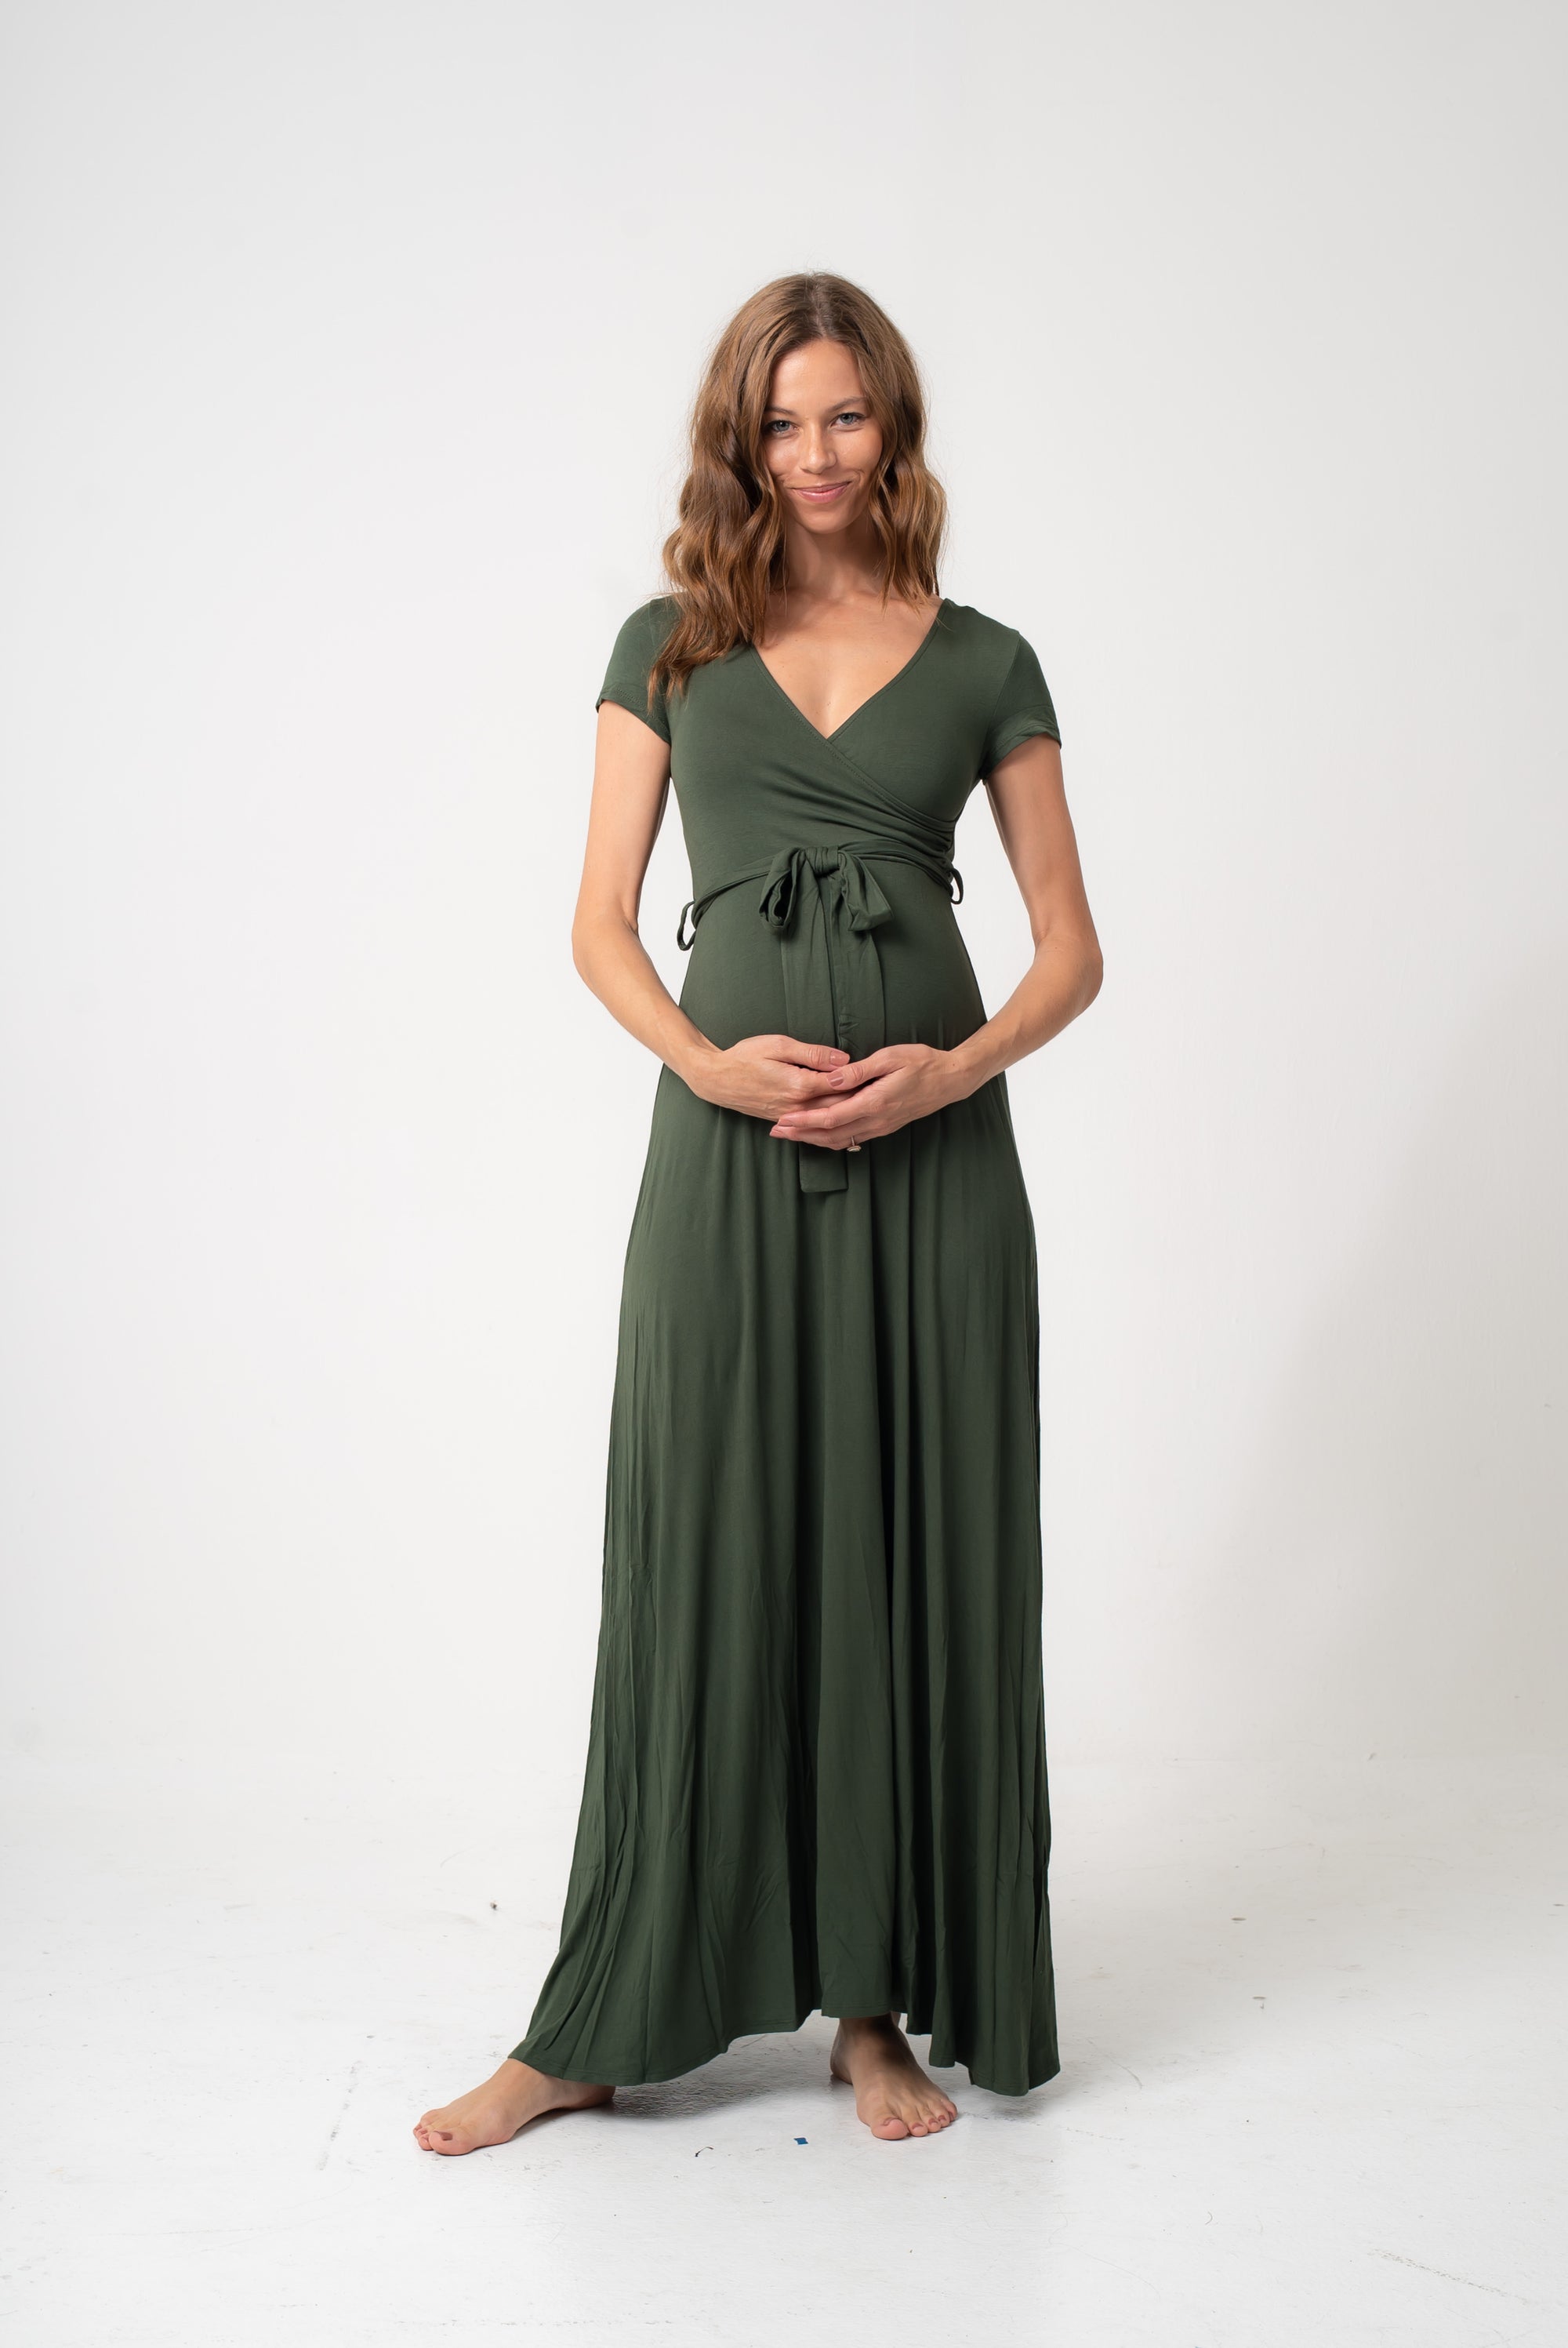 Olive Green Maternity Maxi Dress w/ Tie ...